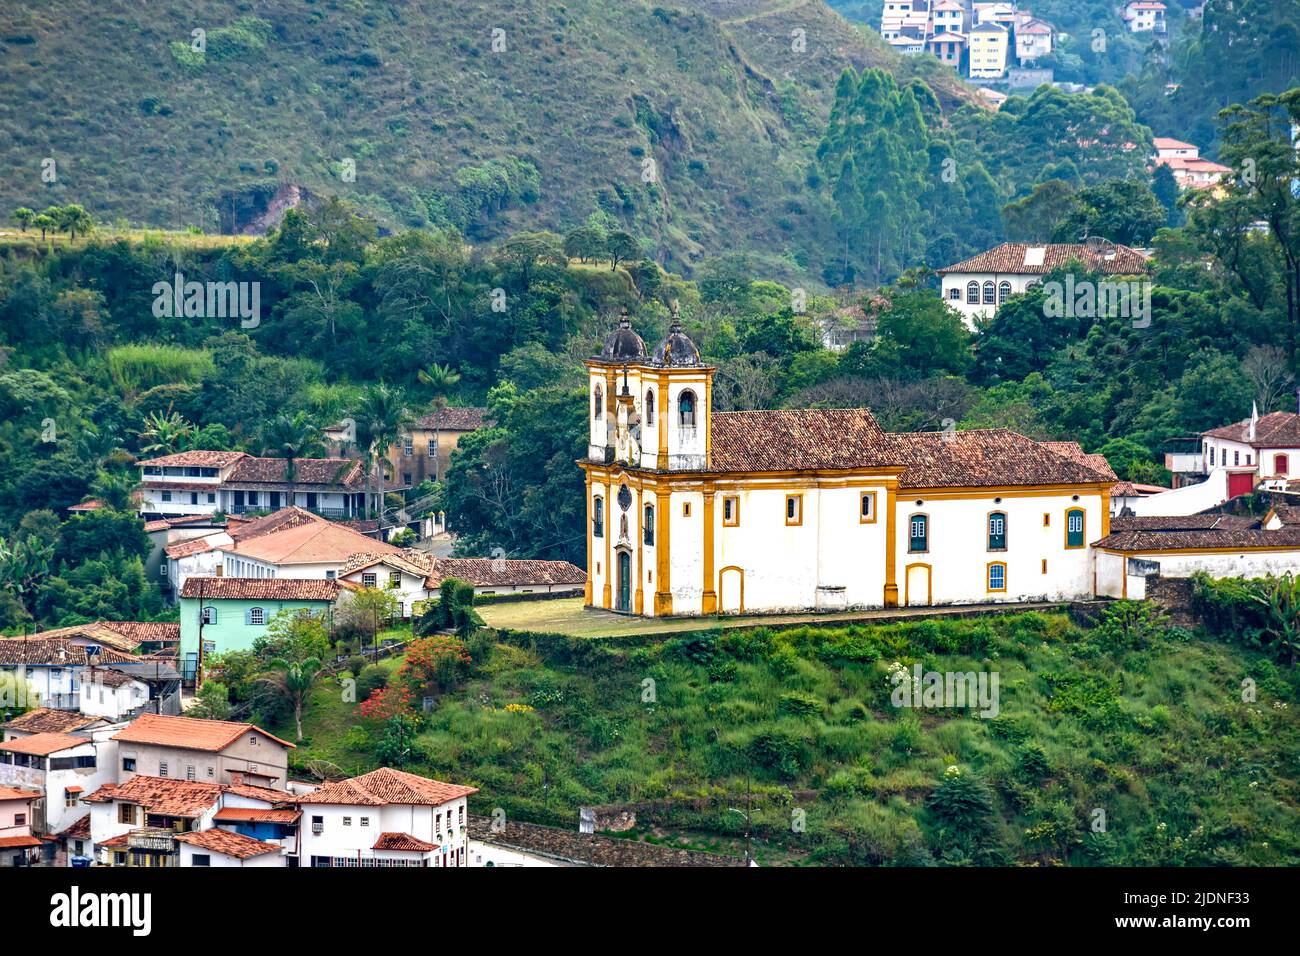 Blick von oben auf eine der mehreren historischen Kirchen im Barockstil in der Stadt Ouro Preto in Minas Gerais mit Häusern und Kolonialstil arou Stockfoto